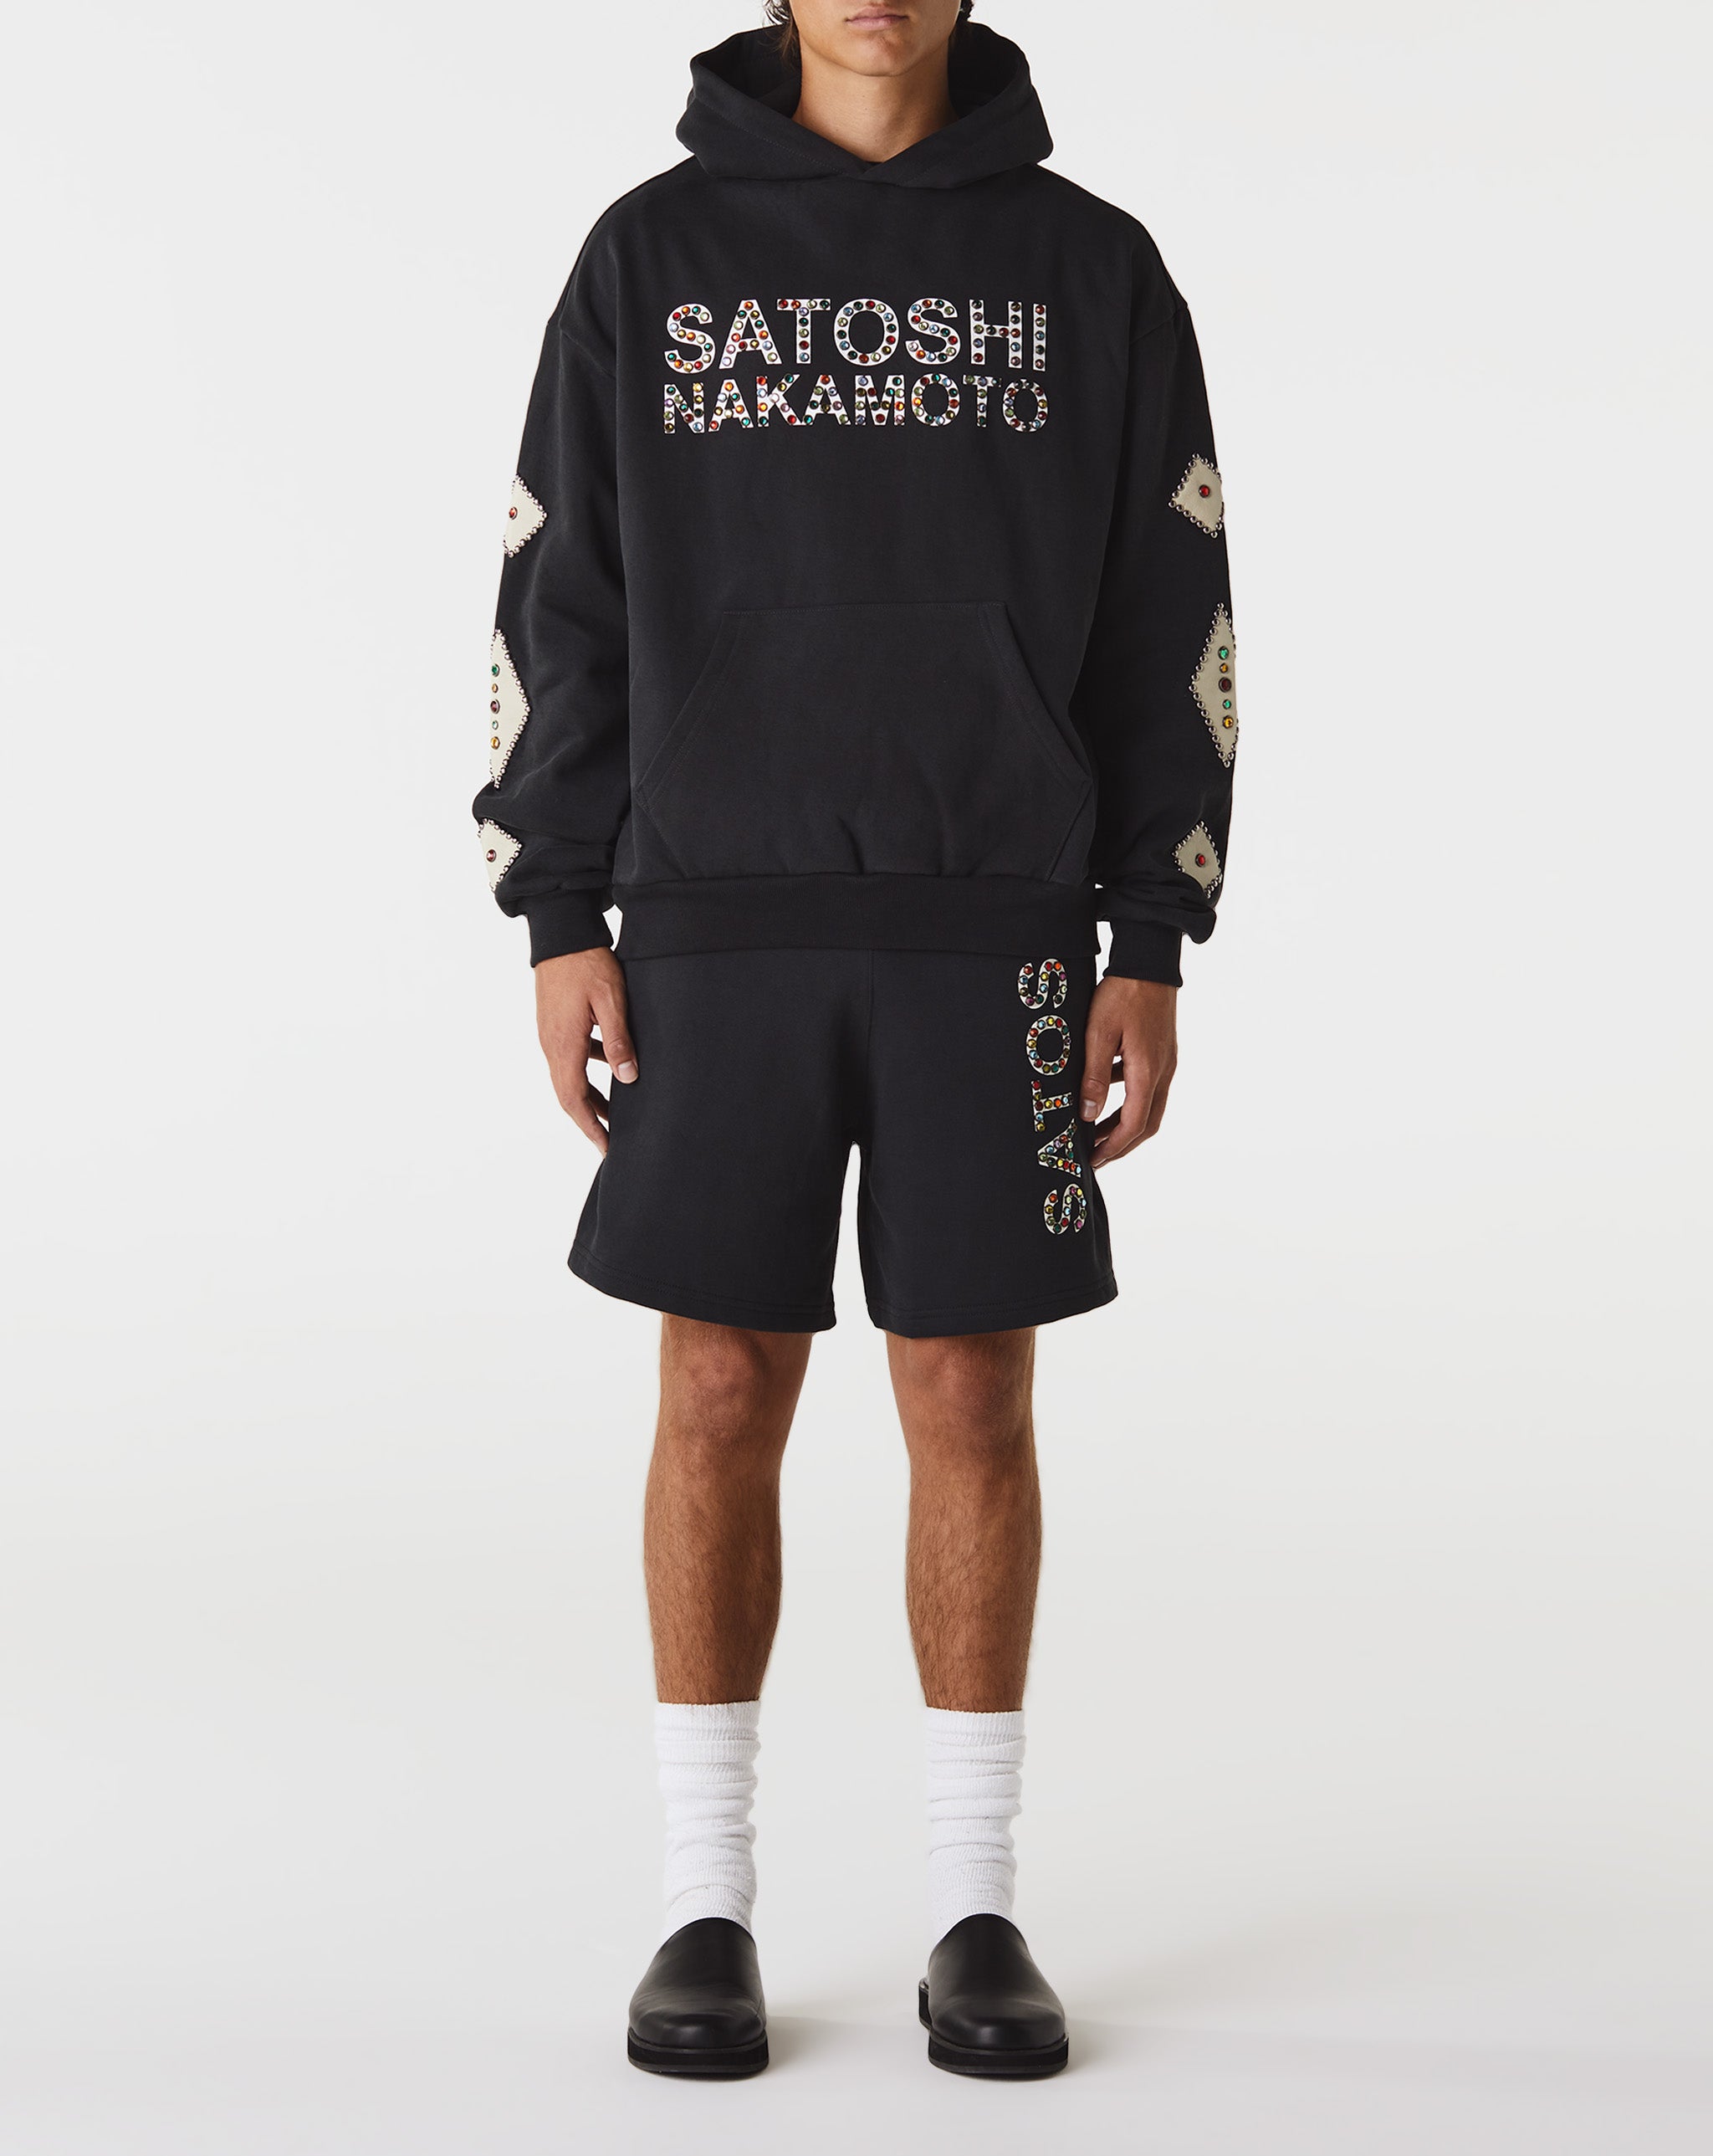 Satoshi Nakamoto Contrast High x  - Cheap Urlfreeze Jordan outlet